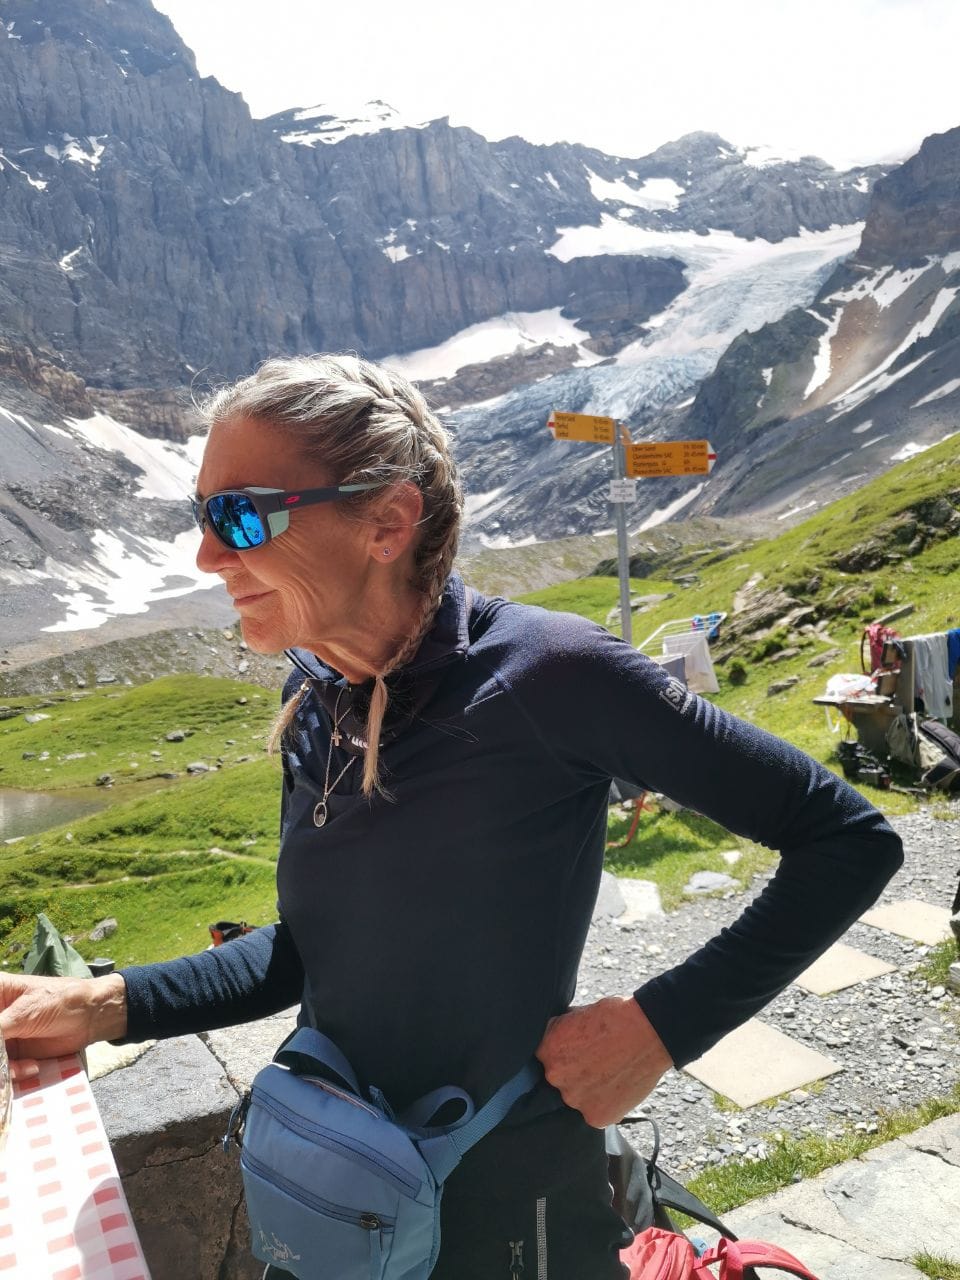 Frau mit Sonnenbrille und Zopf vor Berglandschaft mit Gletscher und Wegweisern.